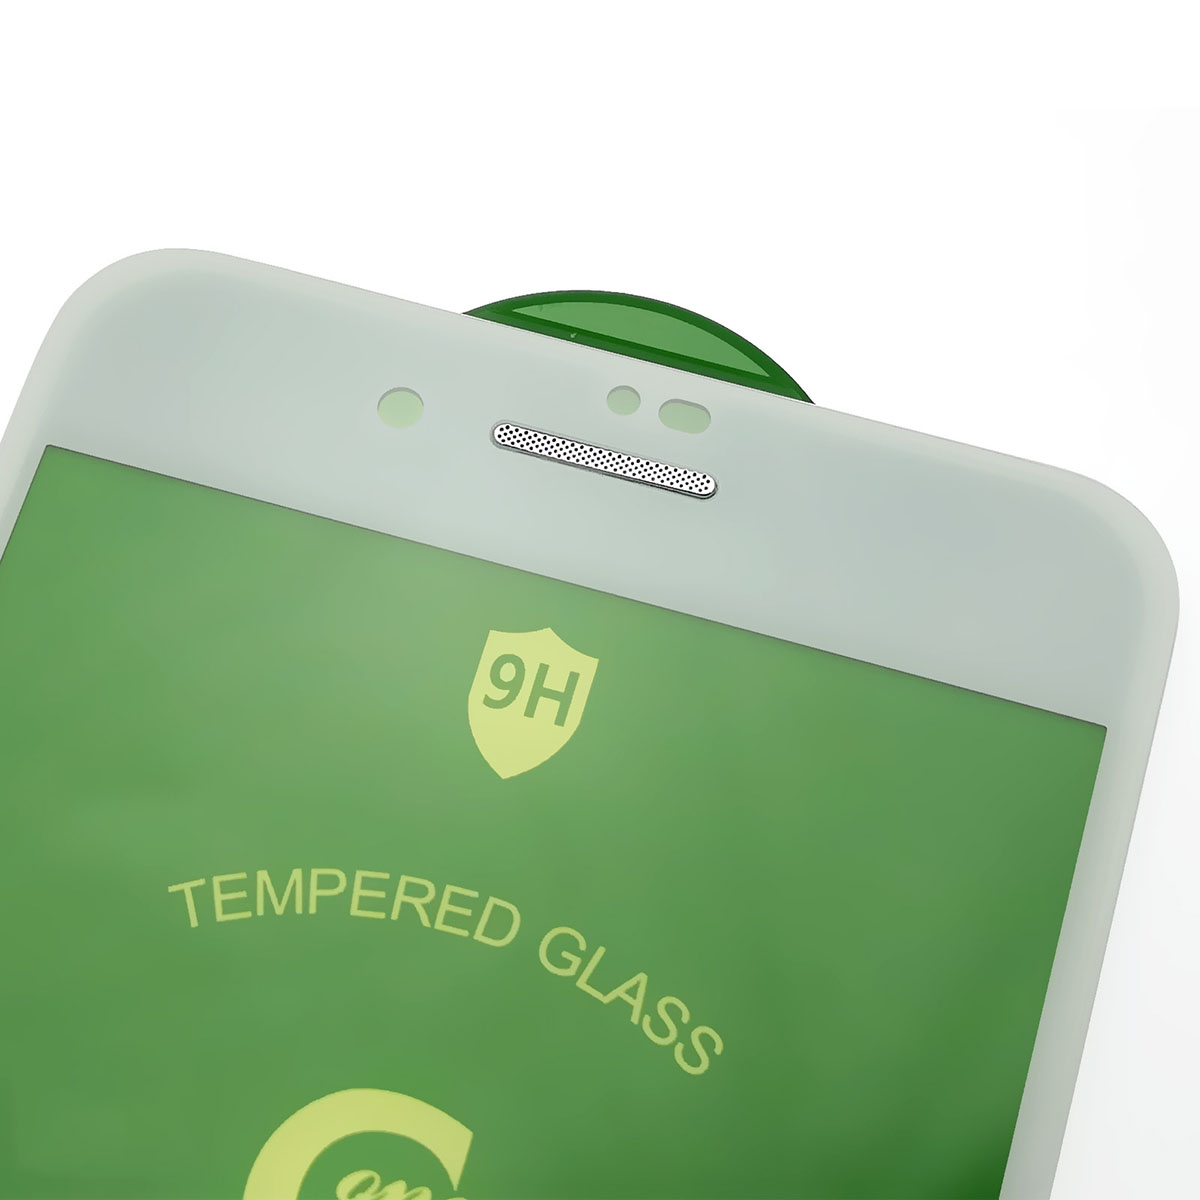 Защитное стекло 5D G-ONE для APPLE iPhone 7 Plus, iPhone 8 Plus, с сеточкой на динамике, цвет окантовки белый.